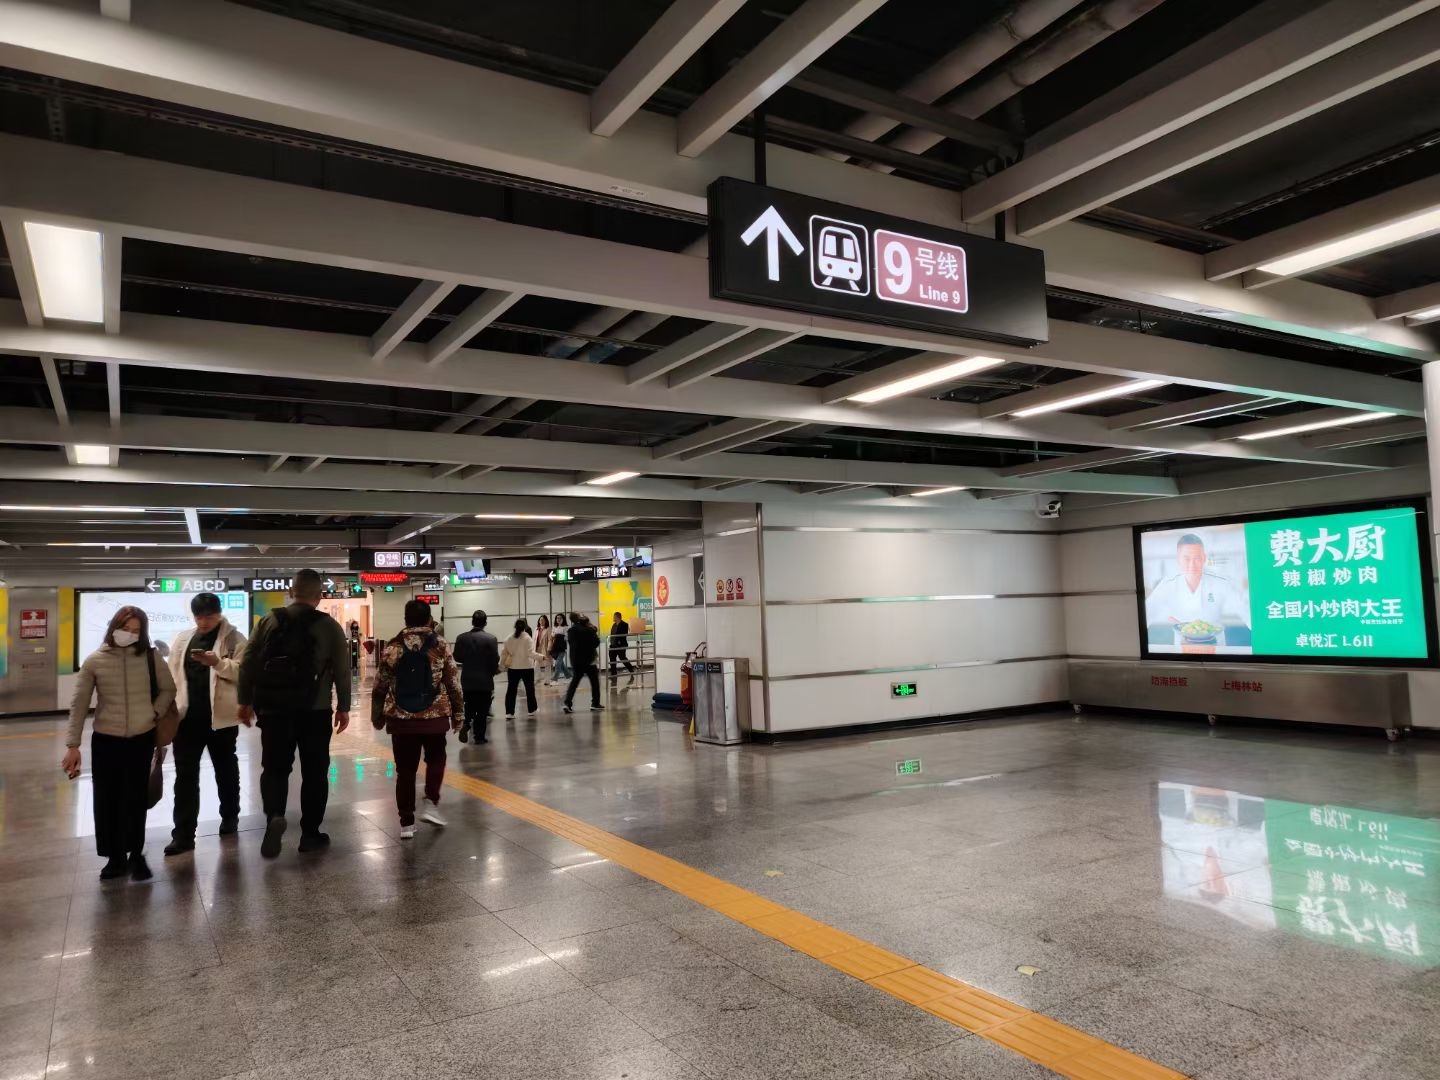 #寻光之旅 从深圳北站到福田区的红荔路的宾馆，要倒一次地铁，4号线转9号线，只是没想到转一下要走很远